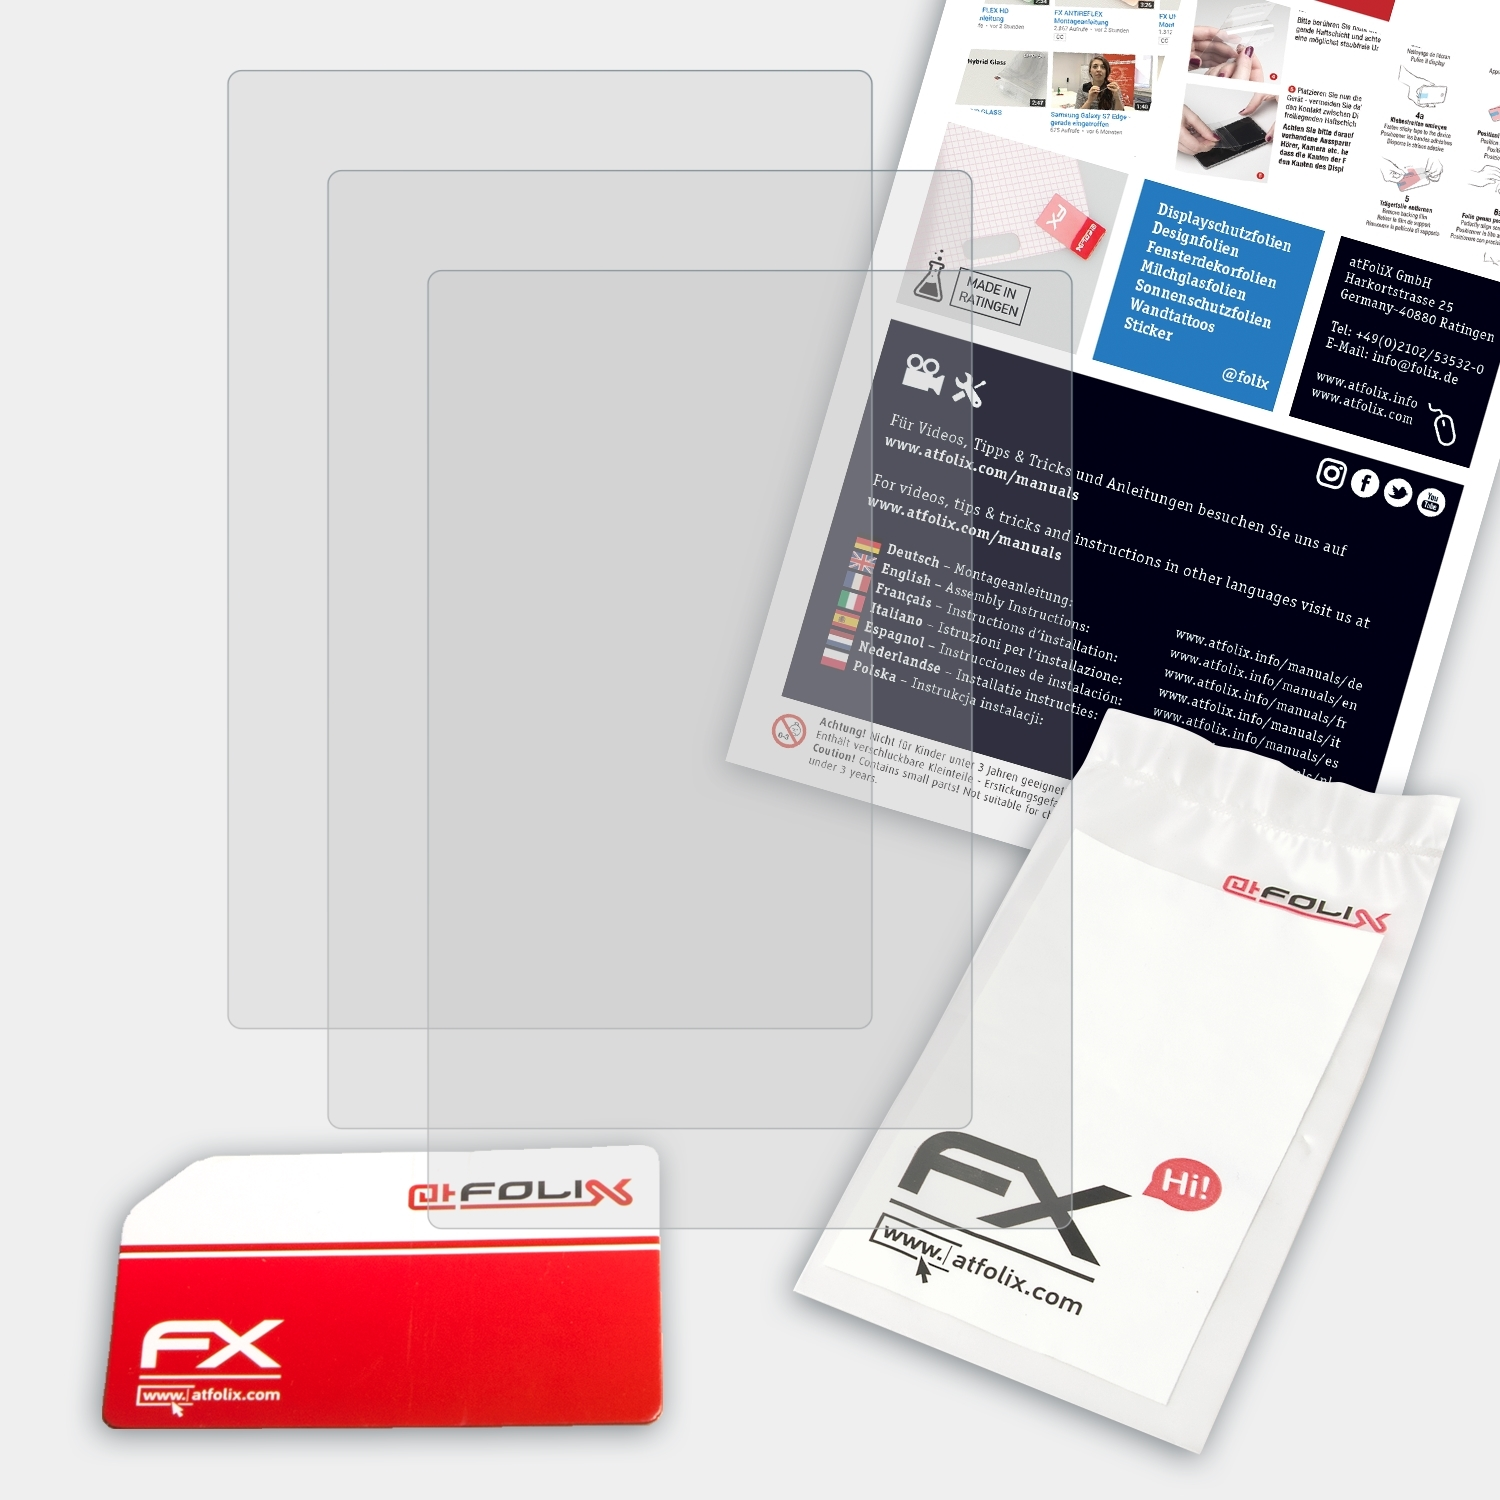 ATFOLIX 3x FX-Antireflex Displayschutz(für mit 2.1 FANET+) Skytraxx